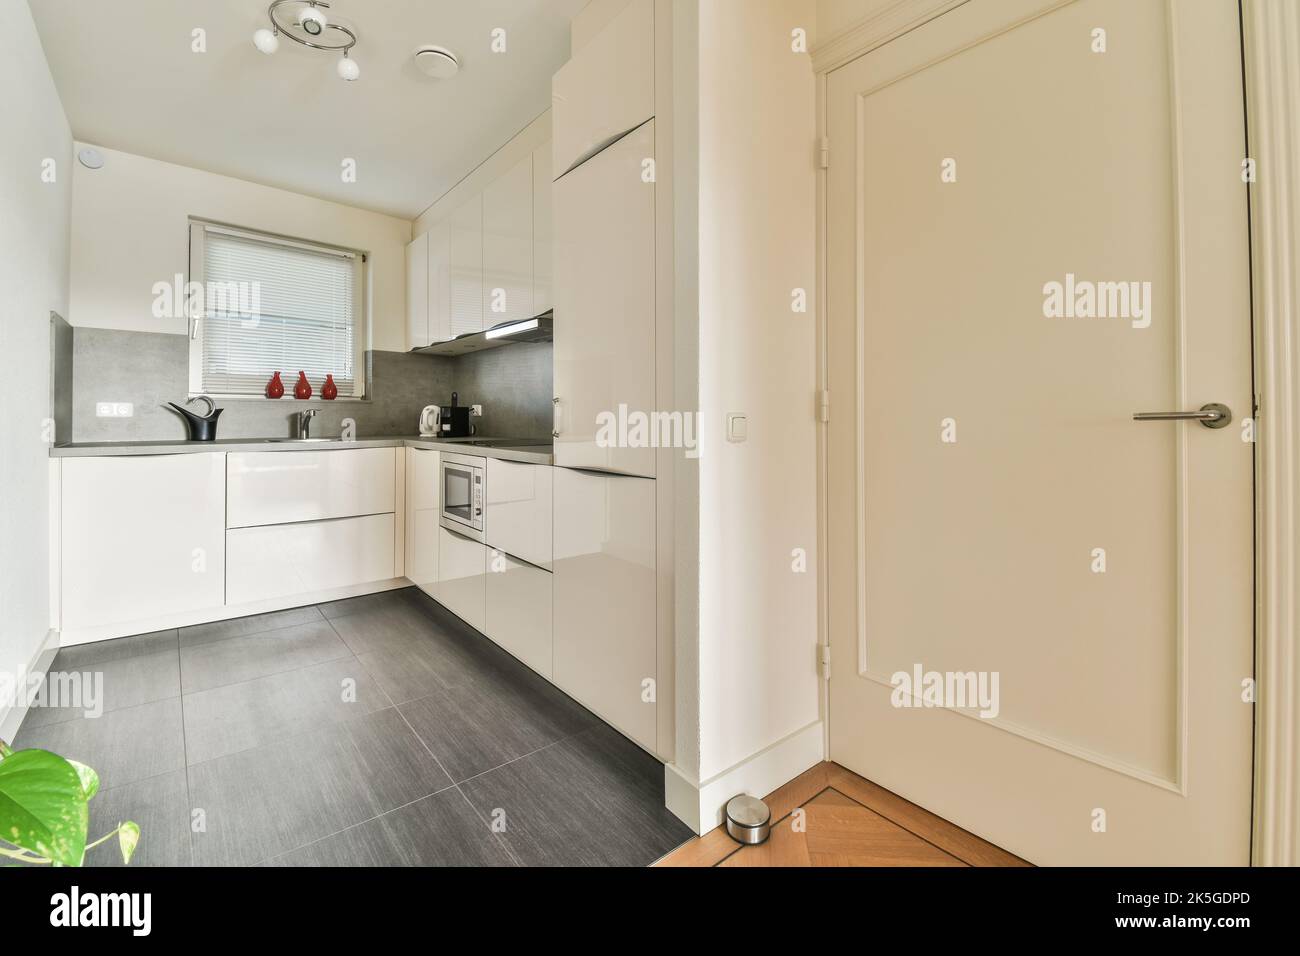 Décoration intérieure d'appartement loft moderne avec cuisine ouverte dans un style minimaliste et spacieuse salle à manger avec table et chaises Banque D'Images